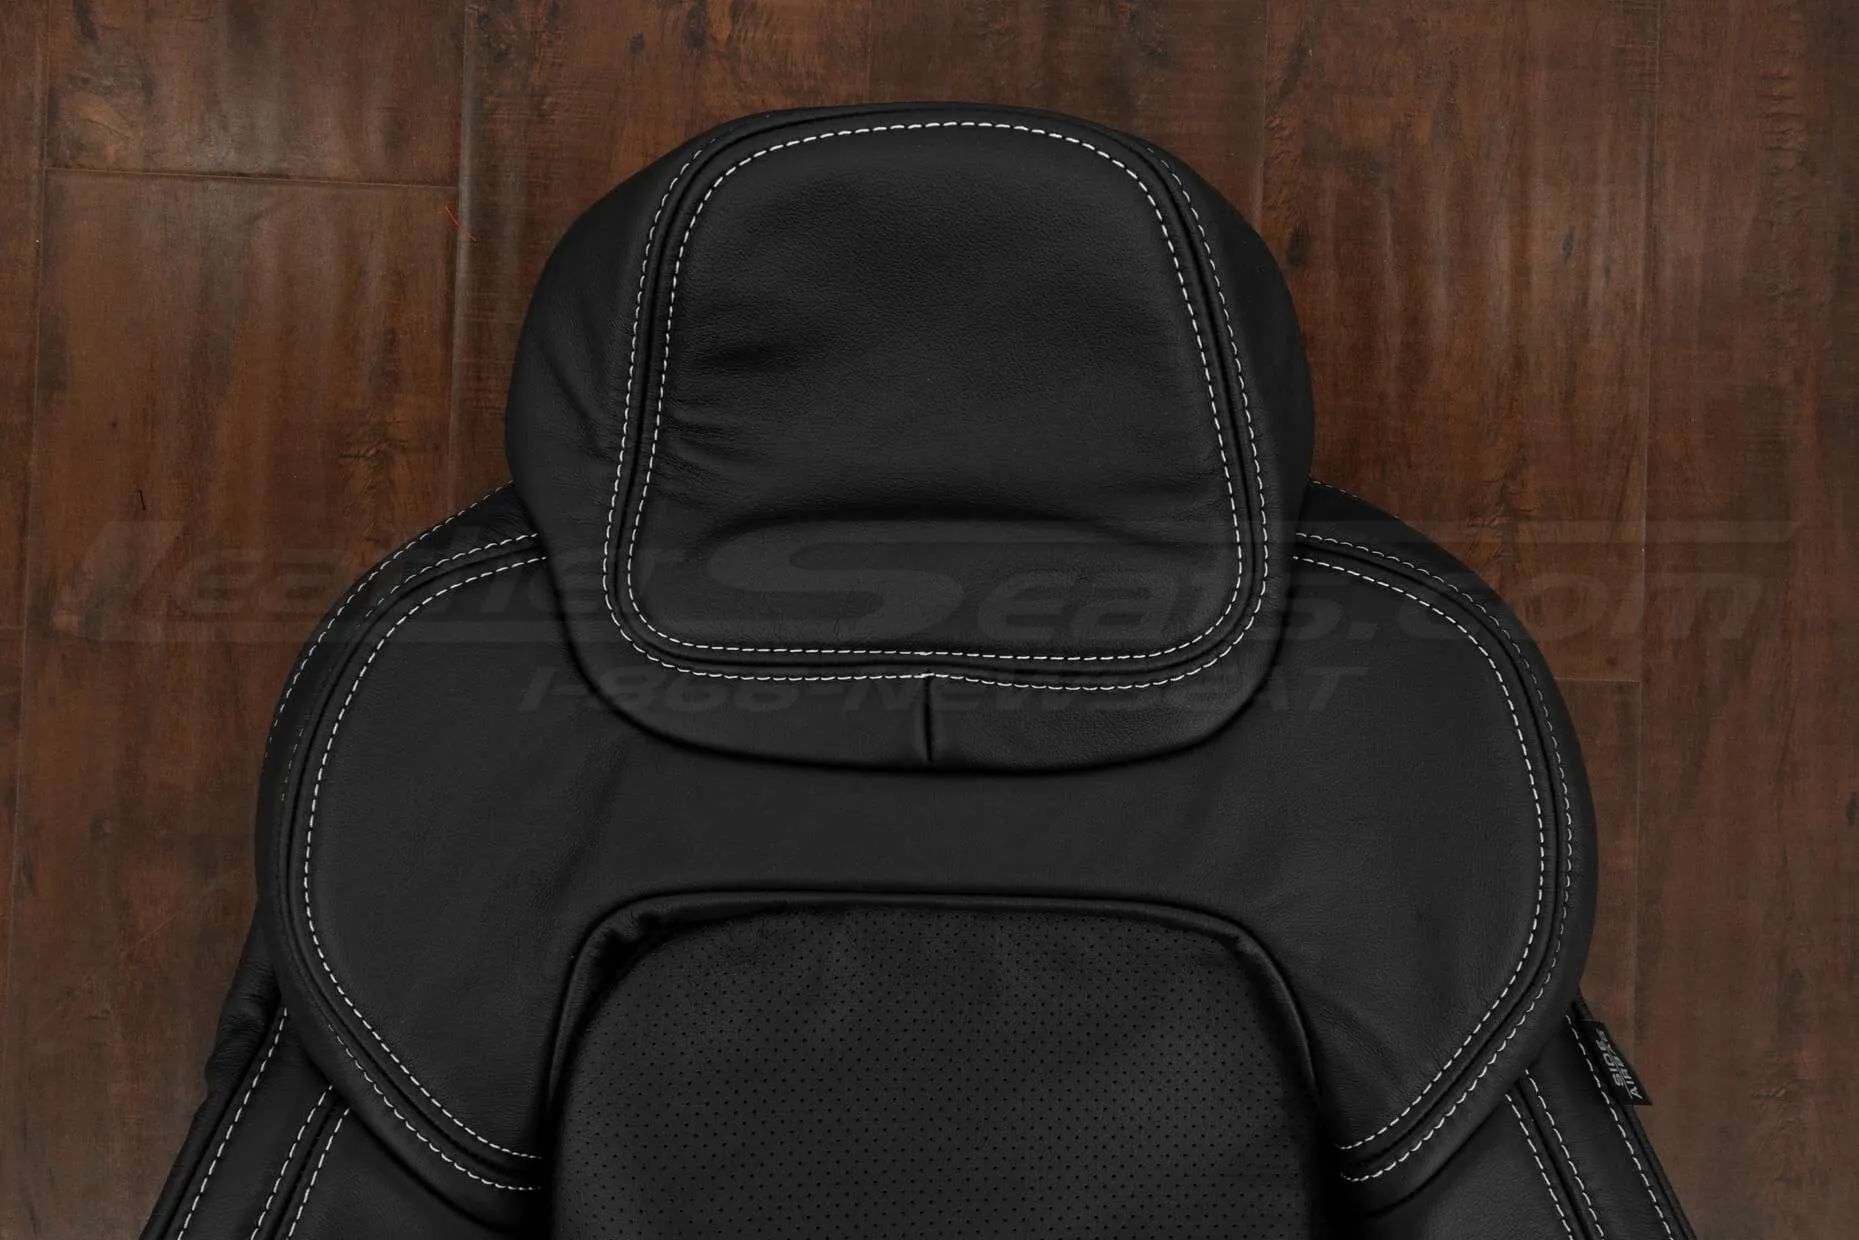 Upper section/Headrest portion of backrest upholstery